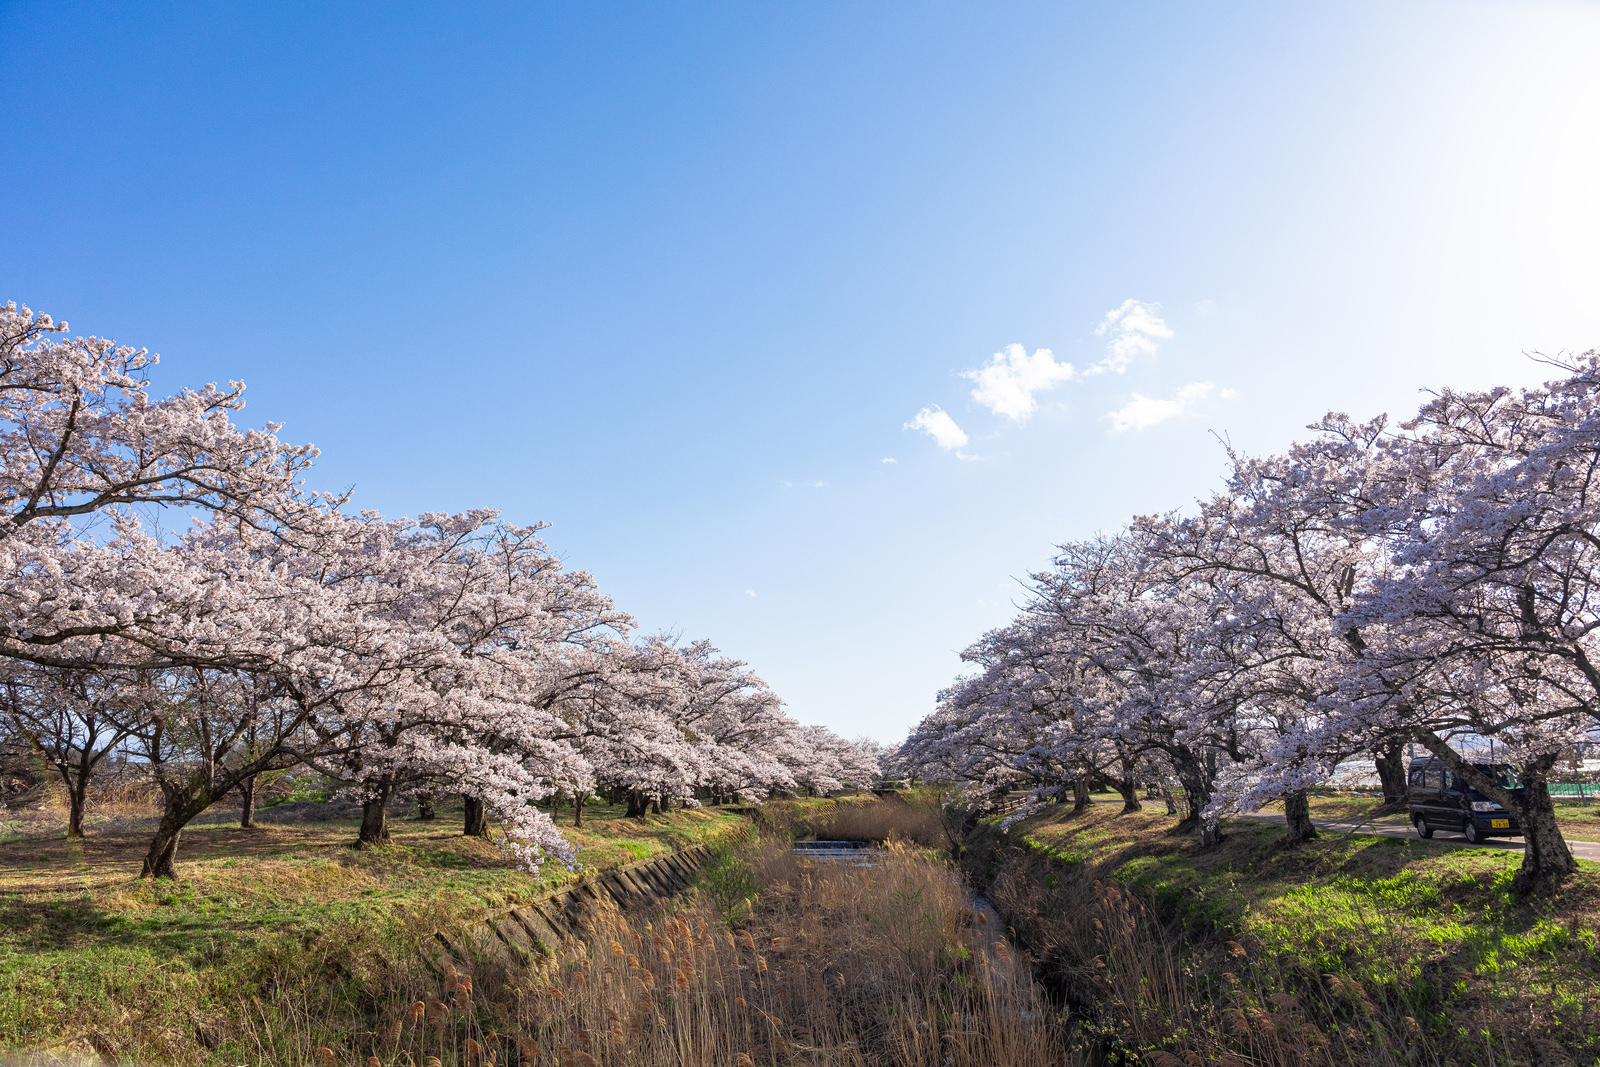 「笹原川の両岸に咲く桜並木」の写真